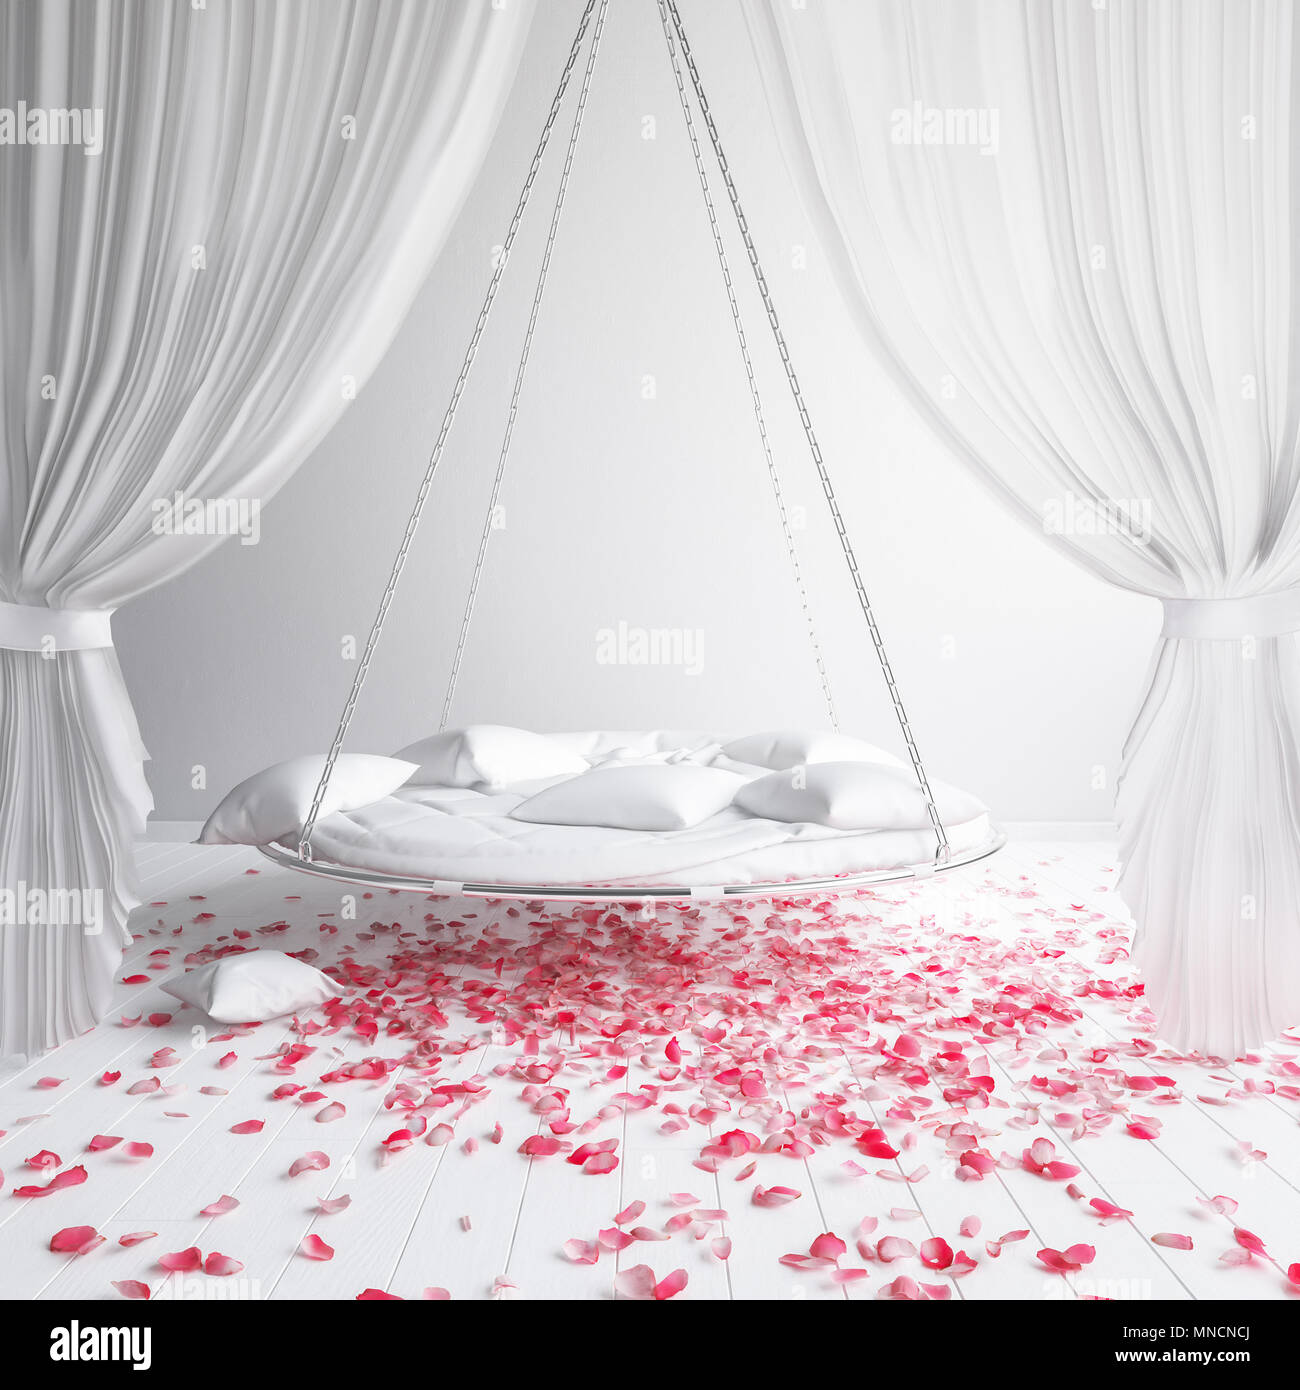 Download 87 Background Alam Romantis Terbaik